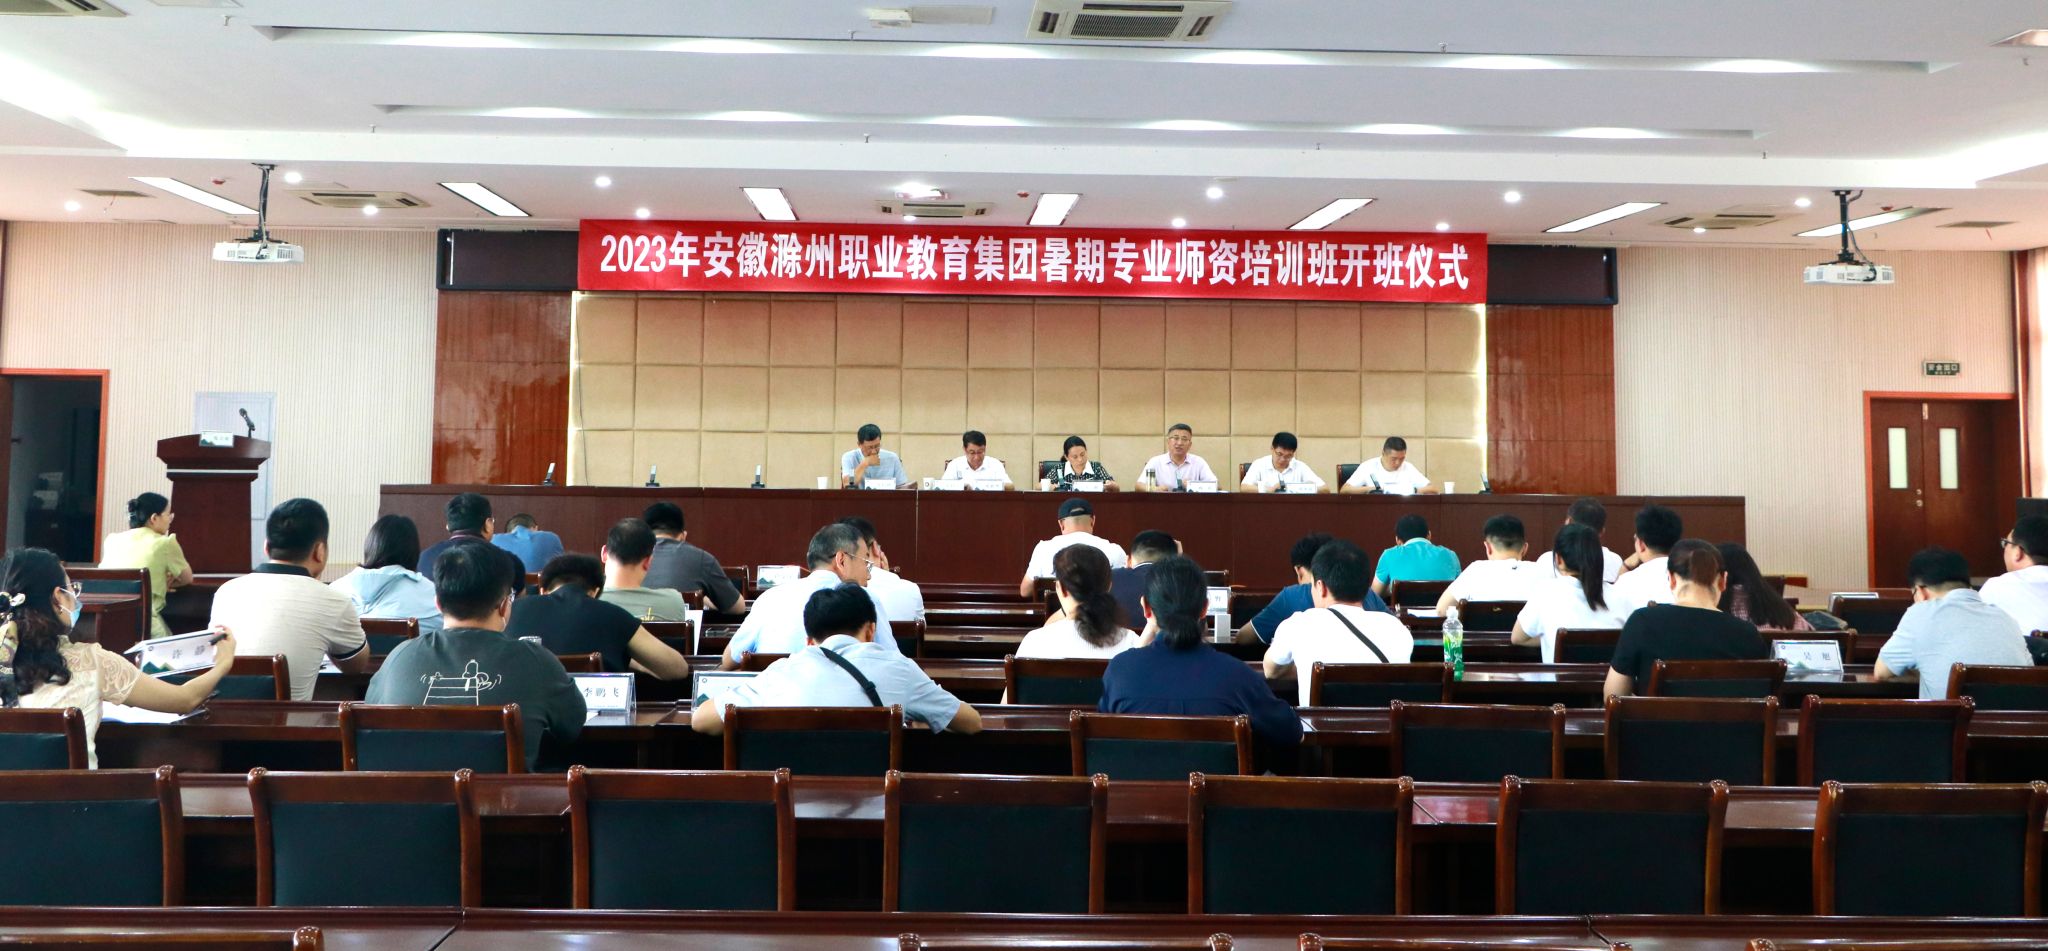 安徽滁州职教集团暑期培训开班